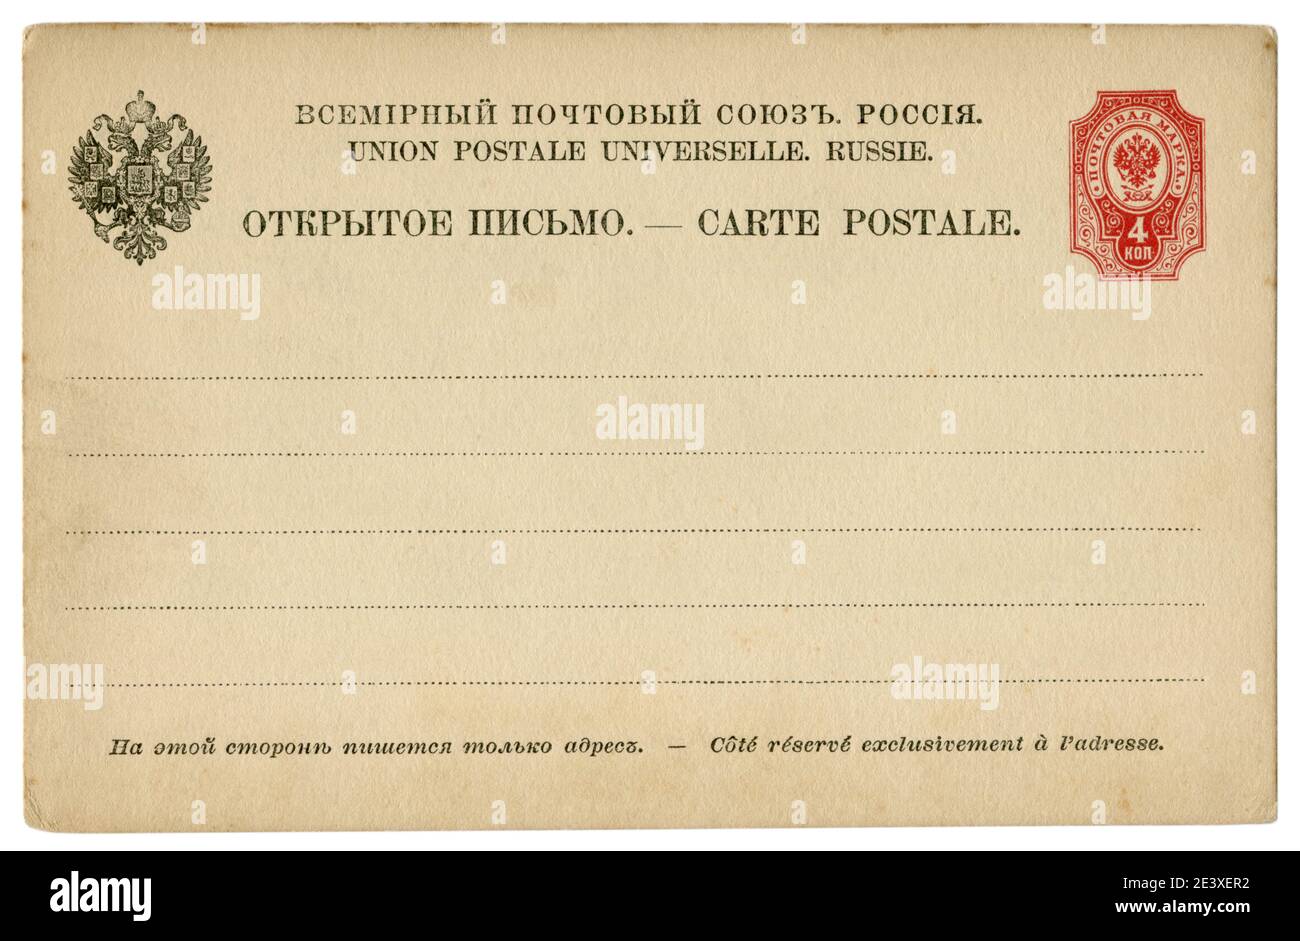 Carta stazionaria storica russa inutilizzata con aquila a doppia testa, francobollo stampato, quattro colli, Impero russo, settima edizione, 1889 Foto Stock